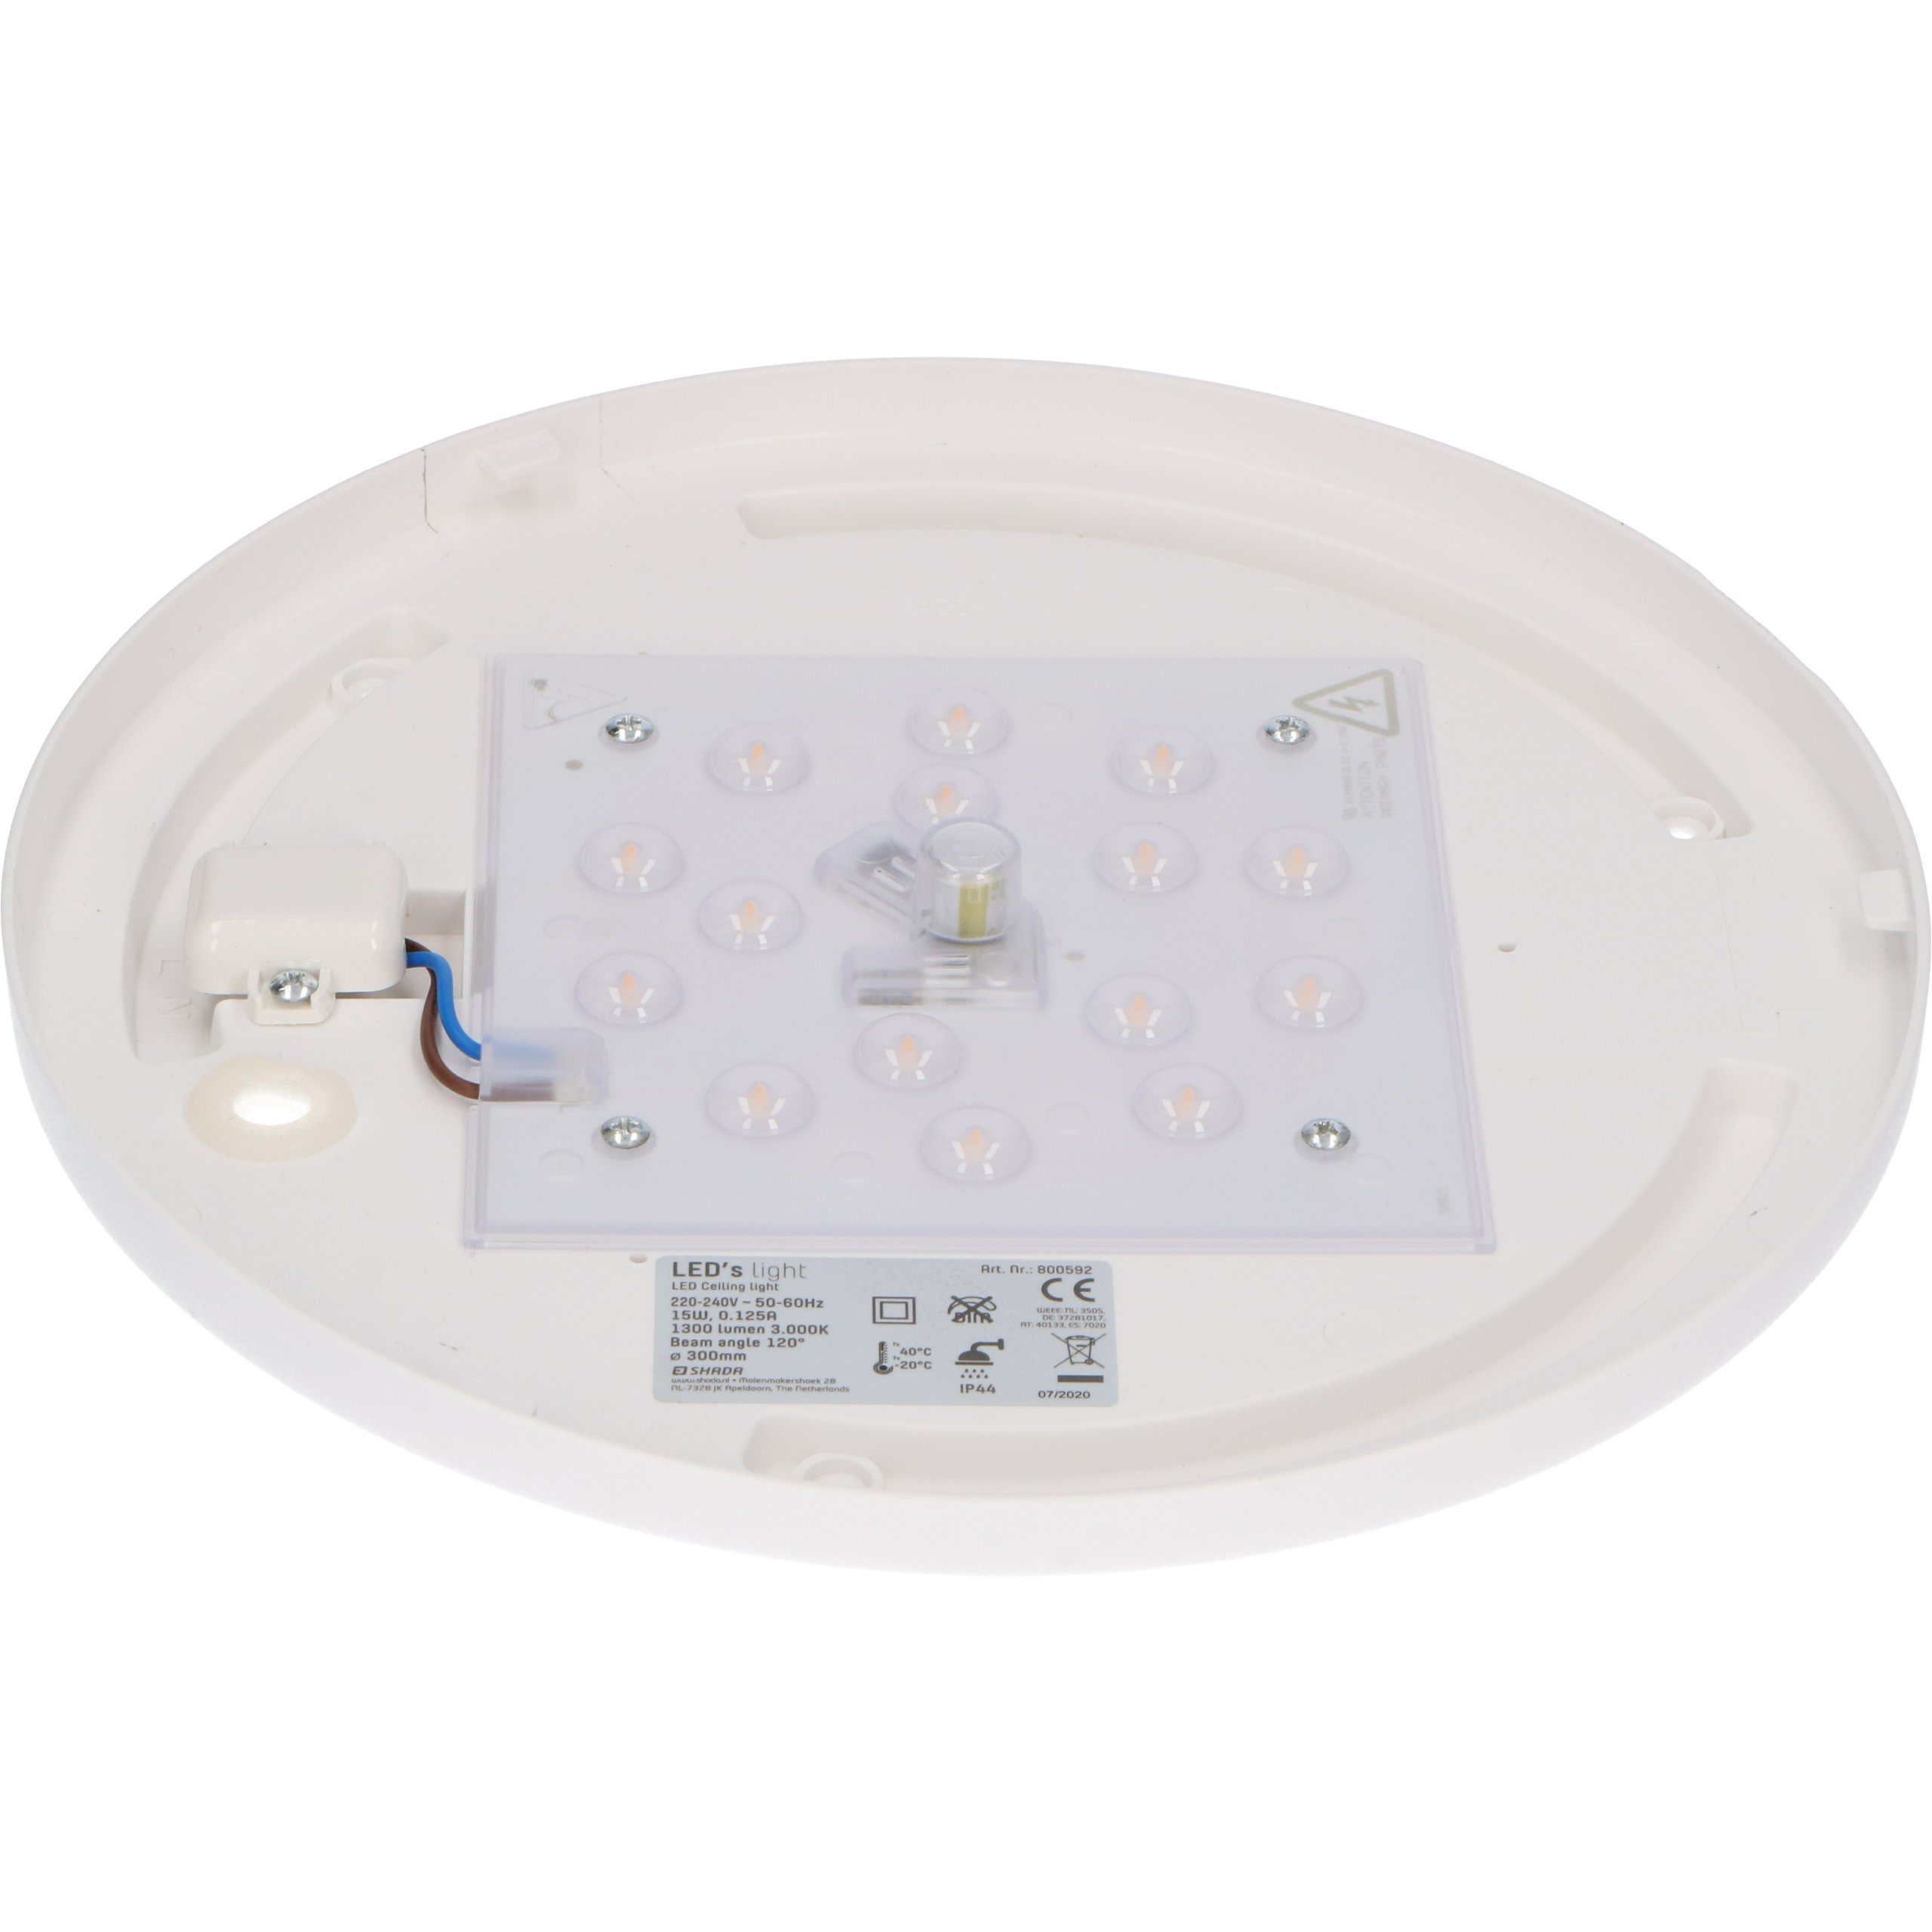 LED's light LED, 30cm Deckenleuchte 15W IP44 0800593 3 Schutzbereich geeignet LED Deckenleuchte, neutralweiß